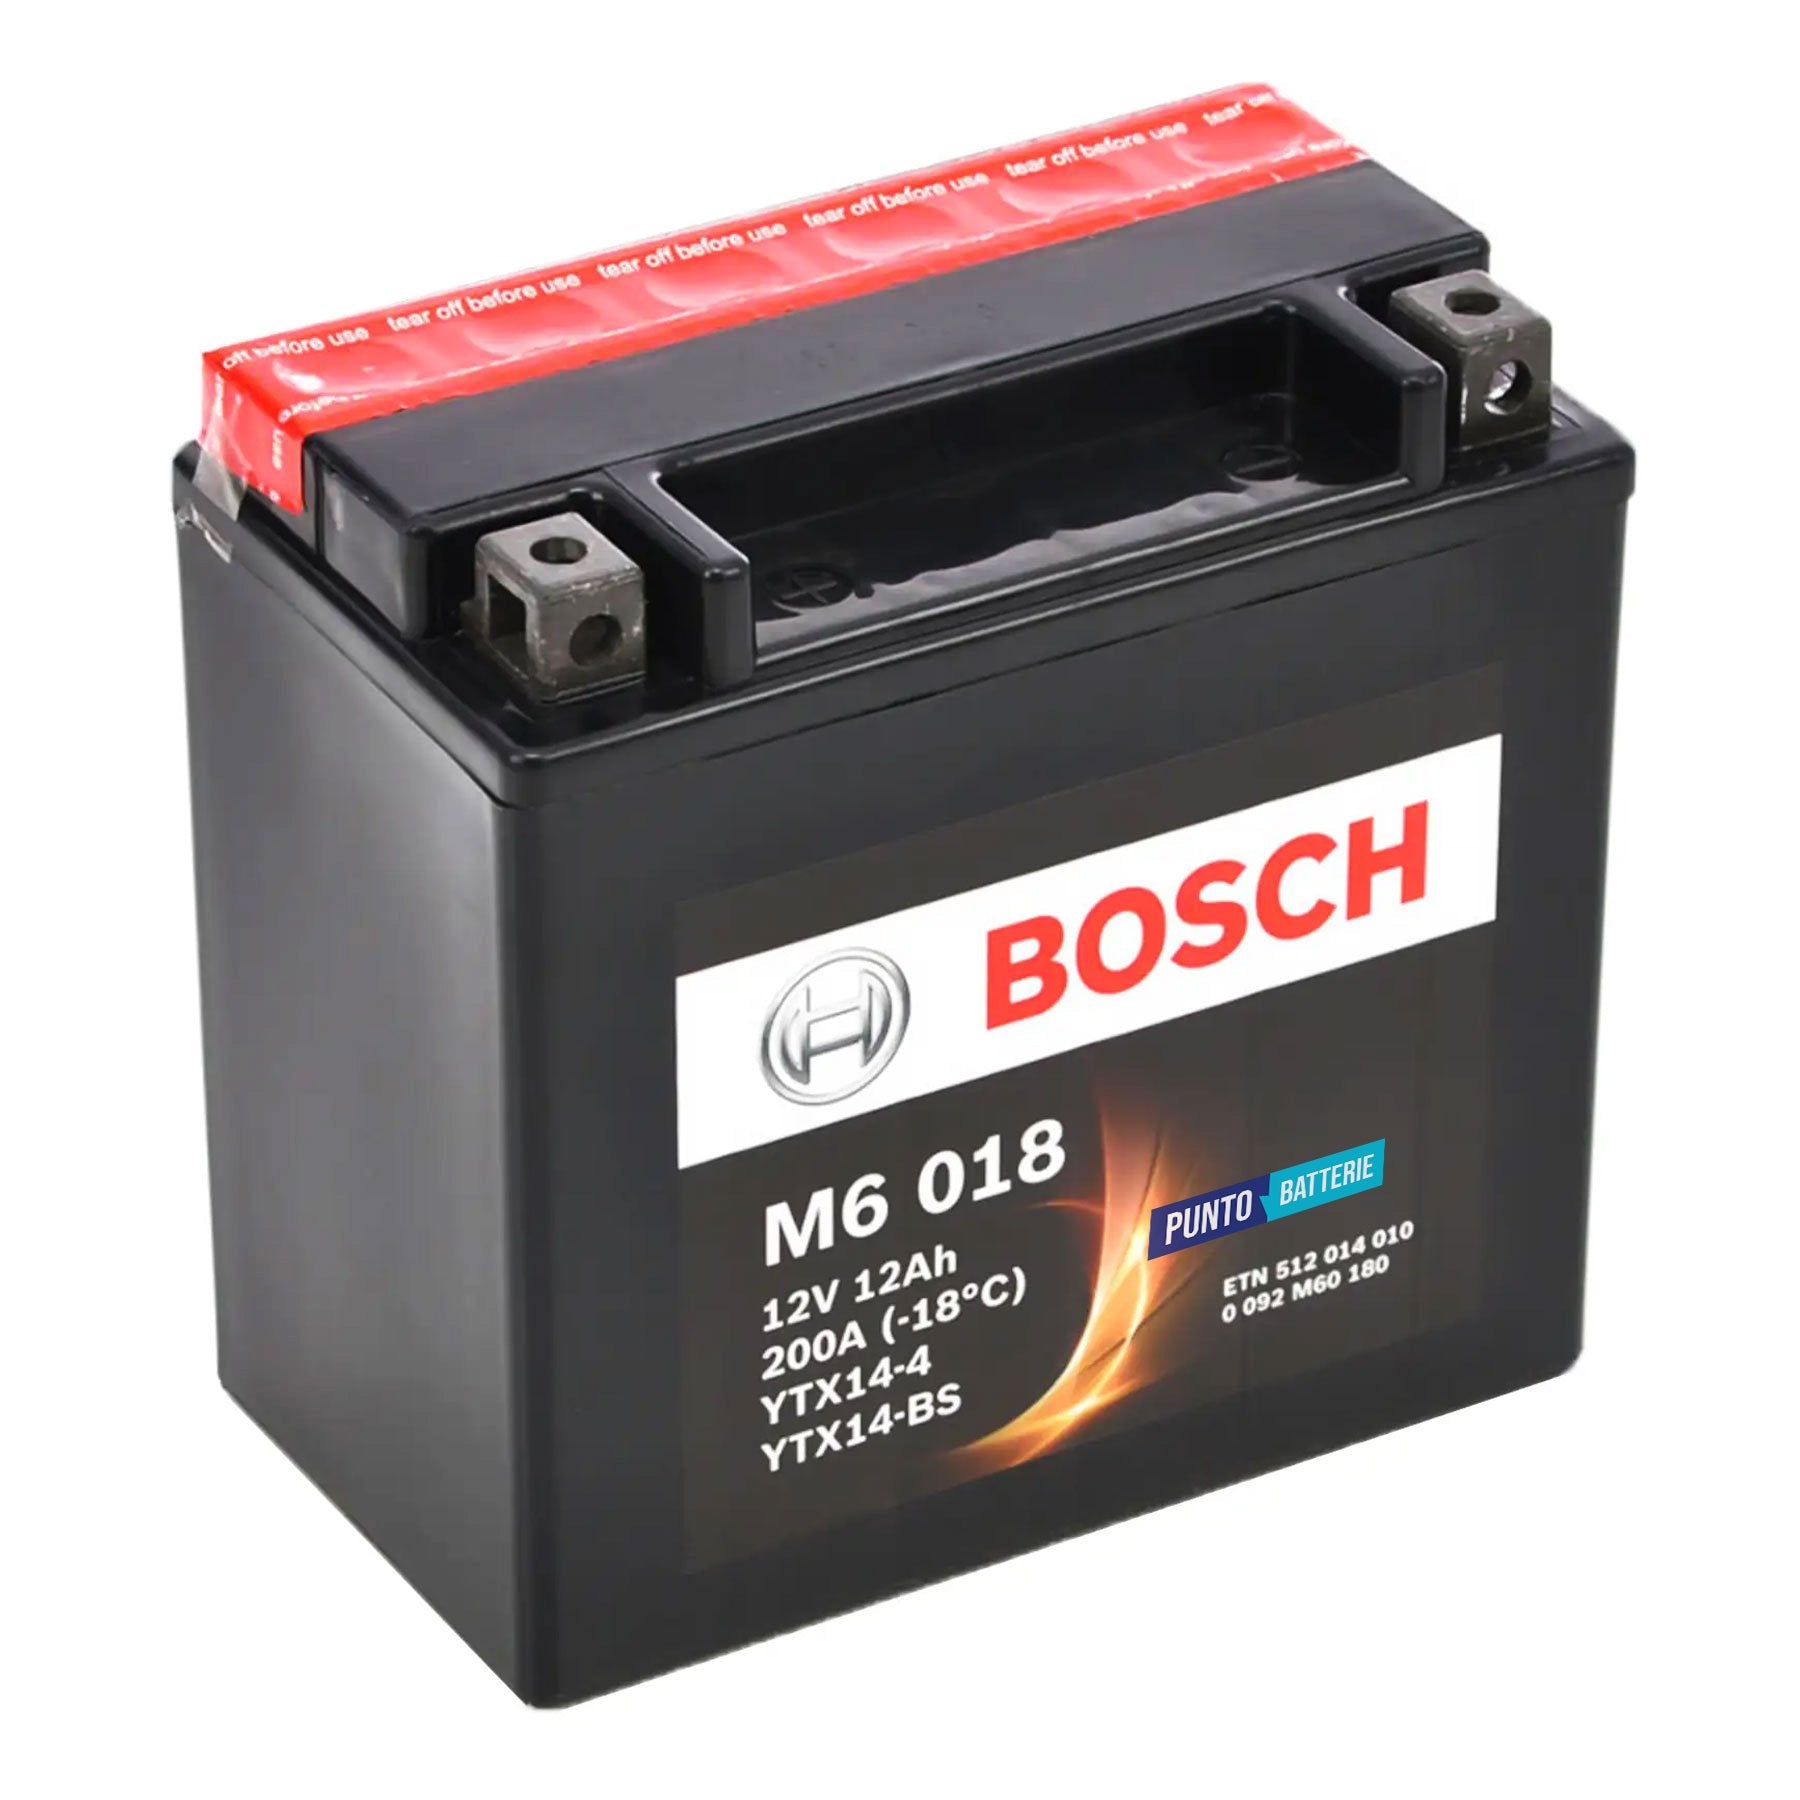 Batteria originale Bosch M6 M6018, dimensioni 150 x 87 x 105, polo positivo a sinistra, 12 volt, 12 amperora, 200 ampere. Batteria per moto, scooter e powersport.